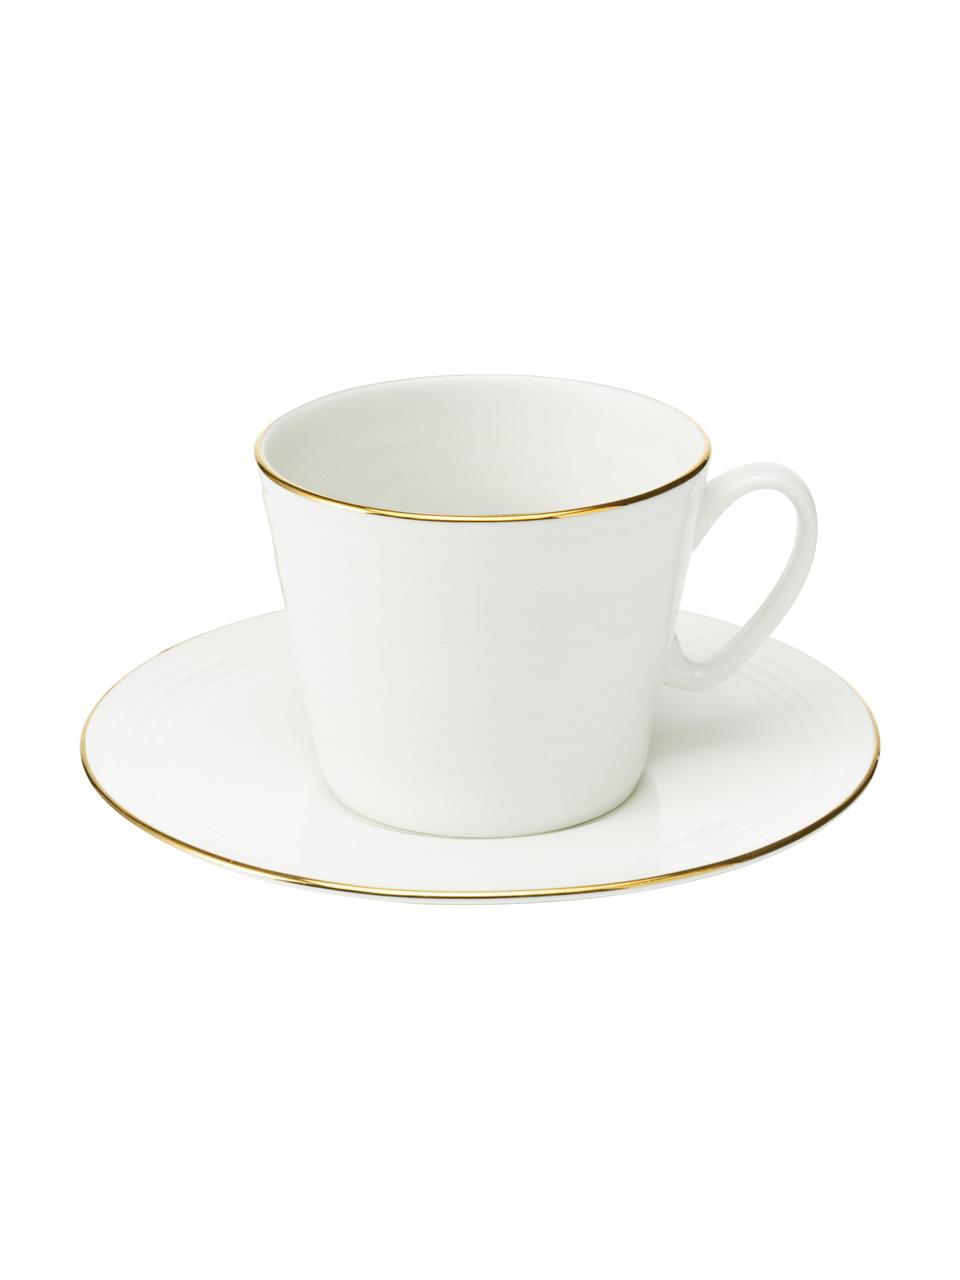 Filiżanka do kawy Cobald, 4 szt., Porcelana, Biały, odcienie złotego, Ø 9 x W 8 cm